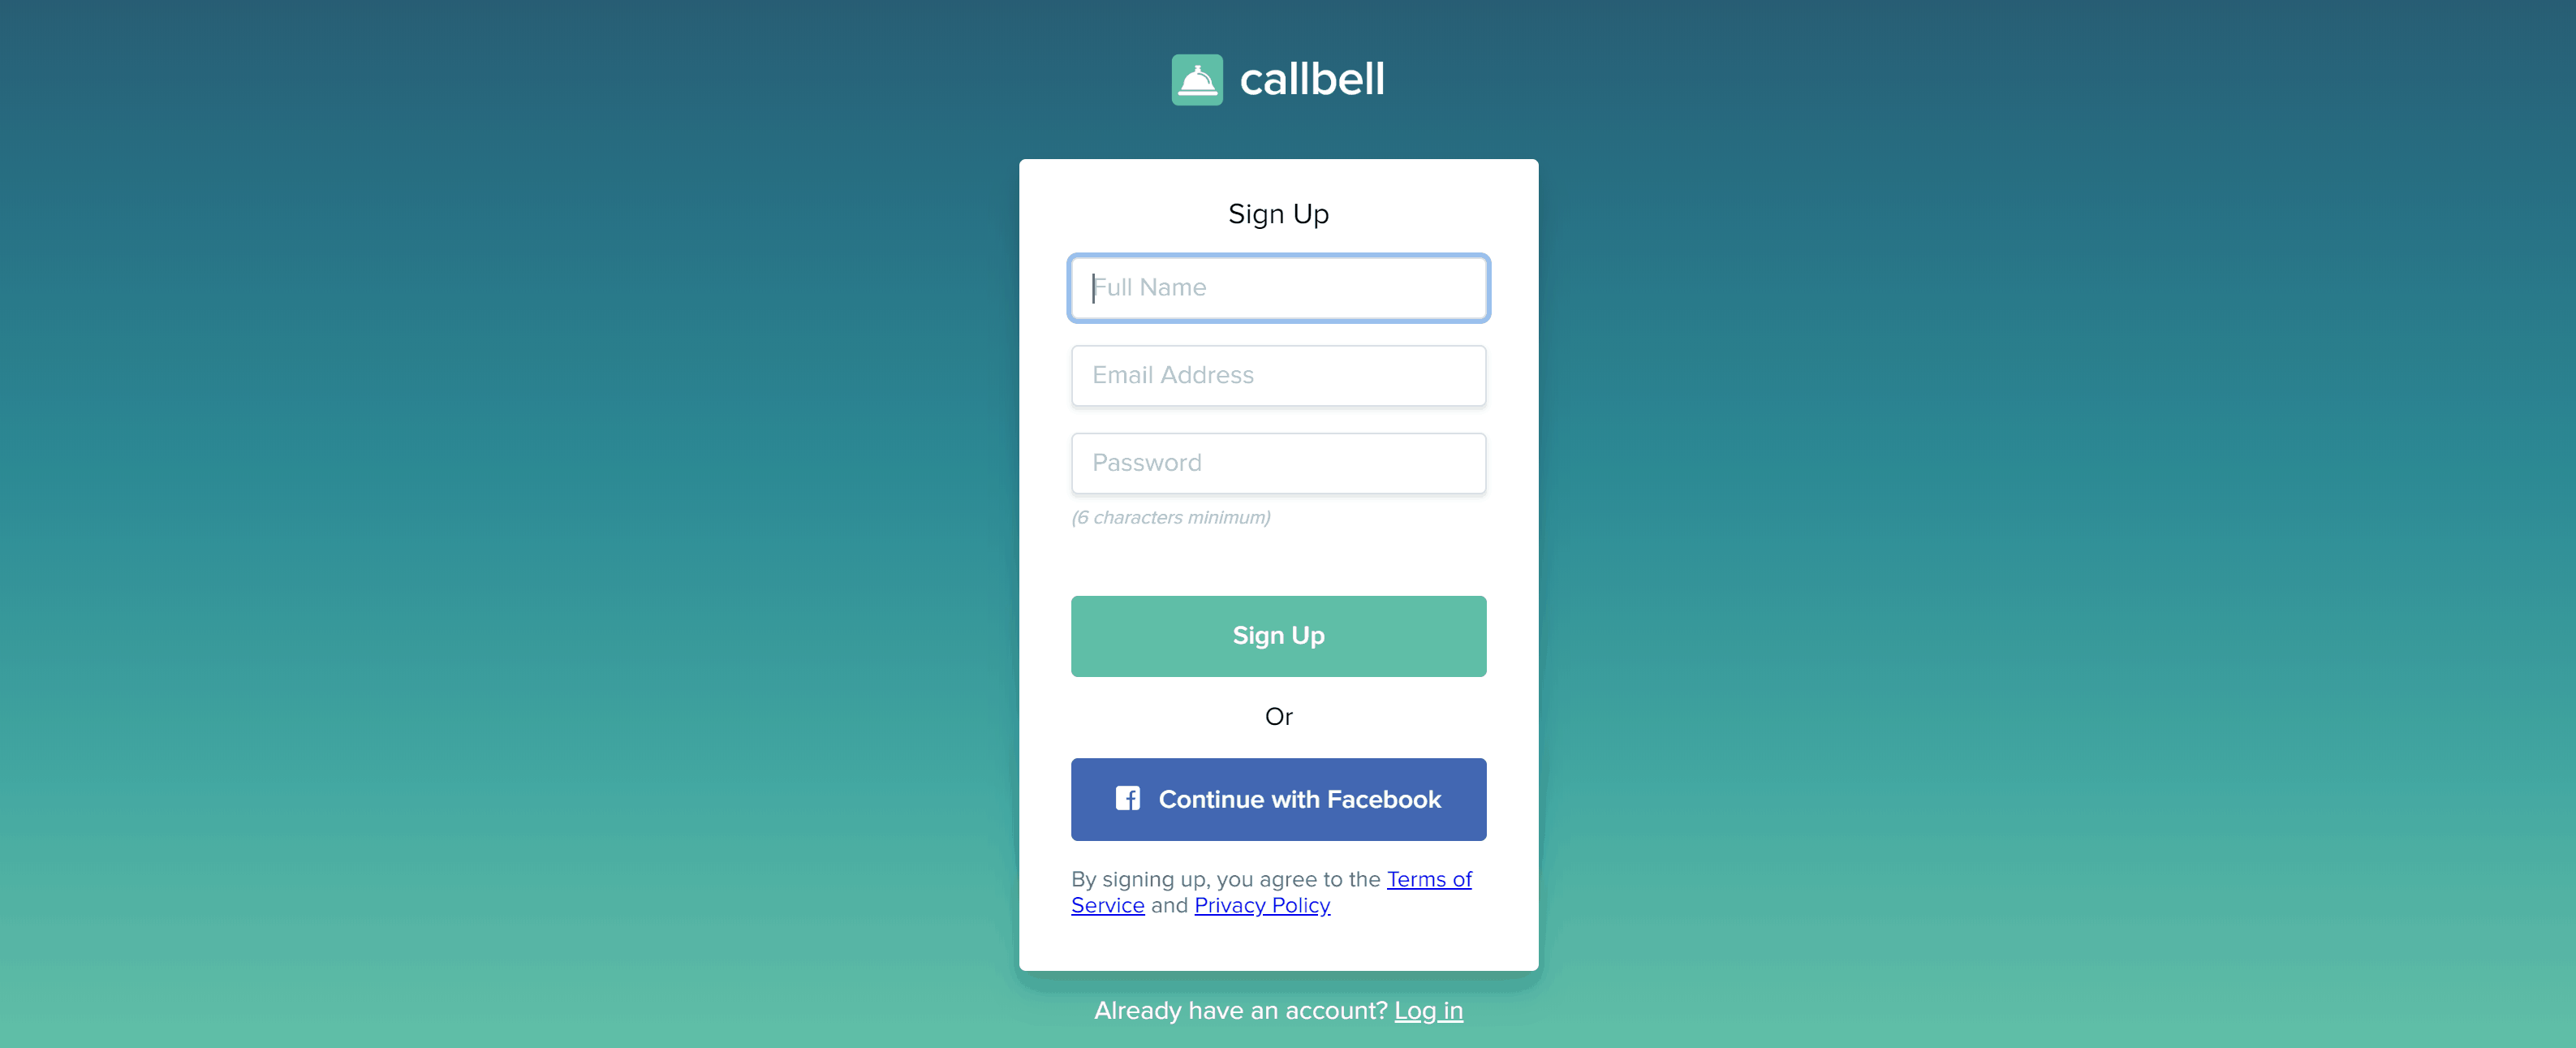 Come creare un account su Callbell